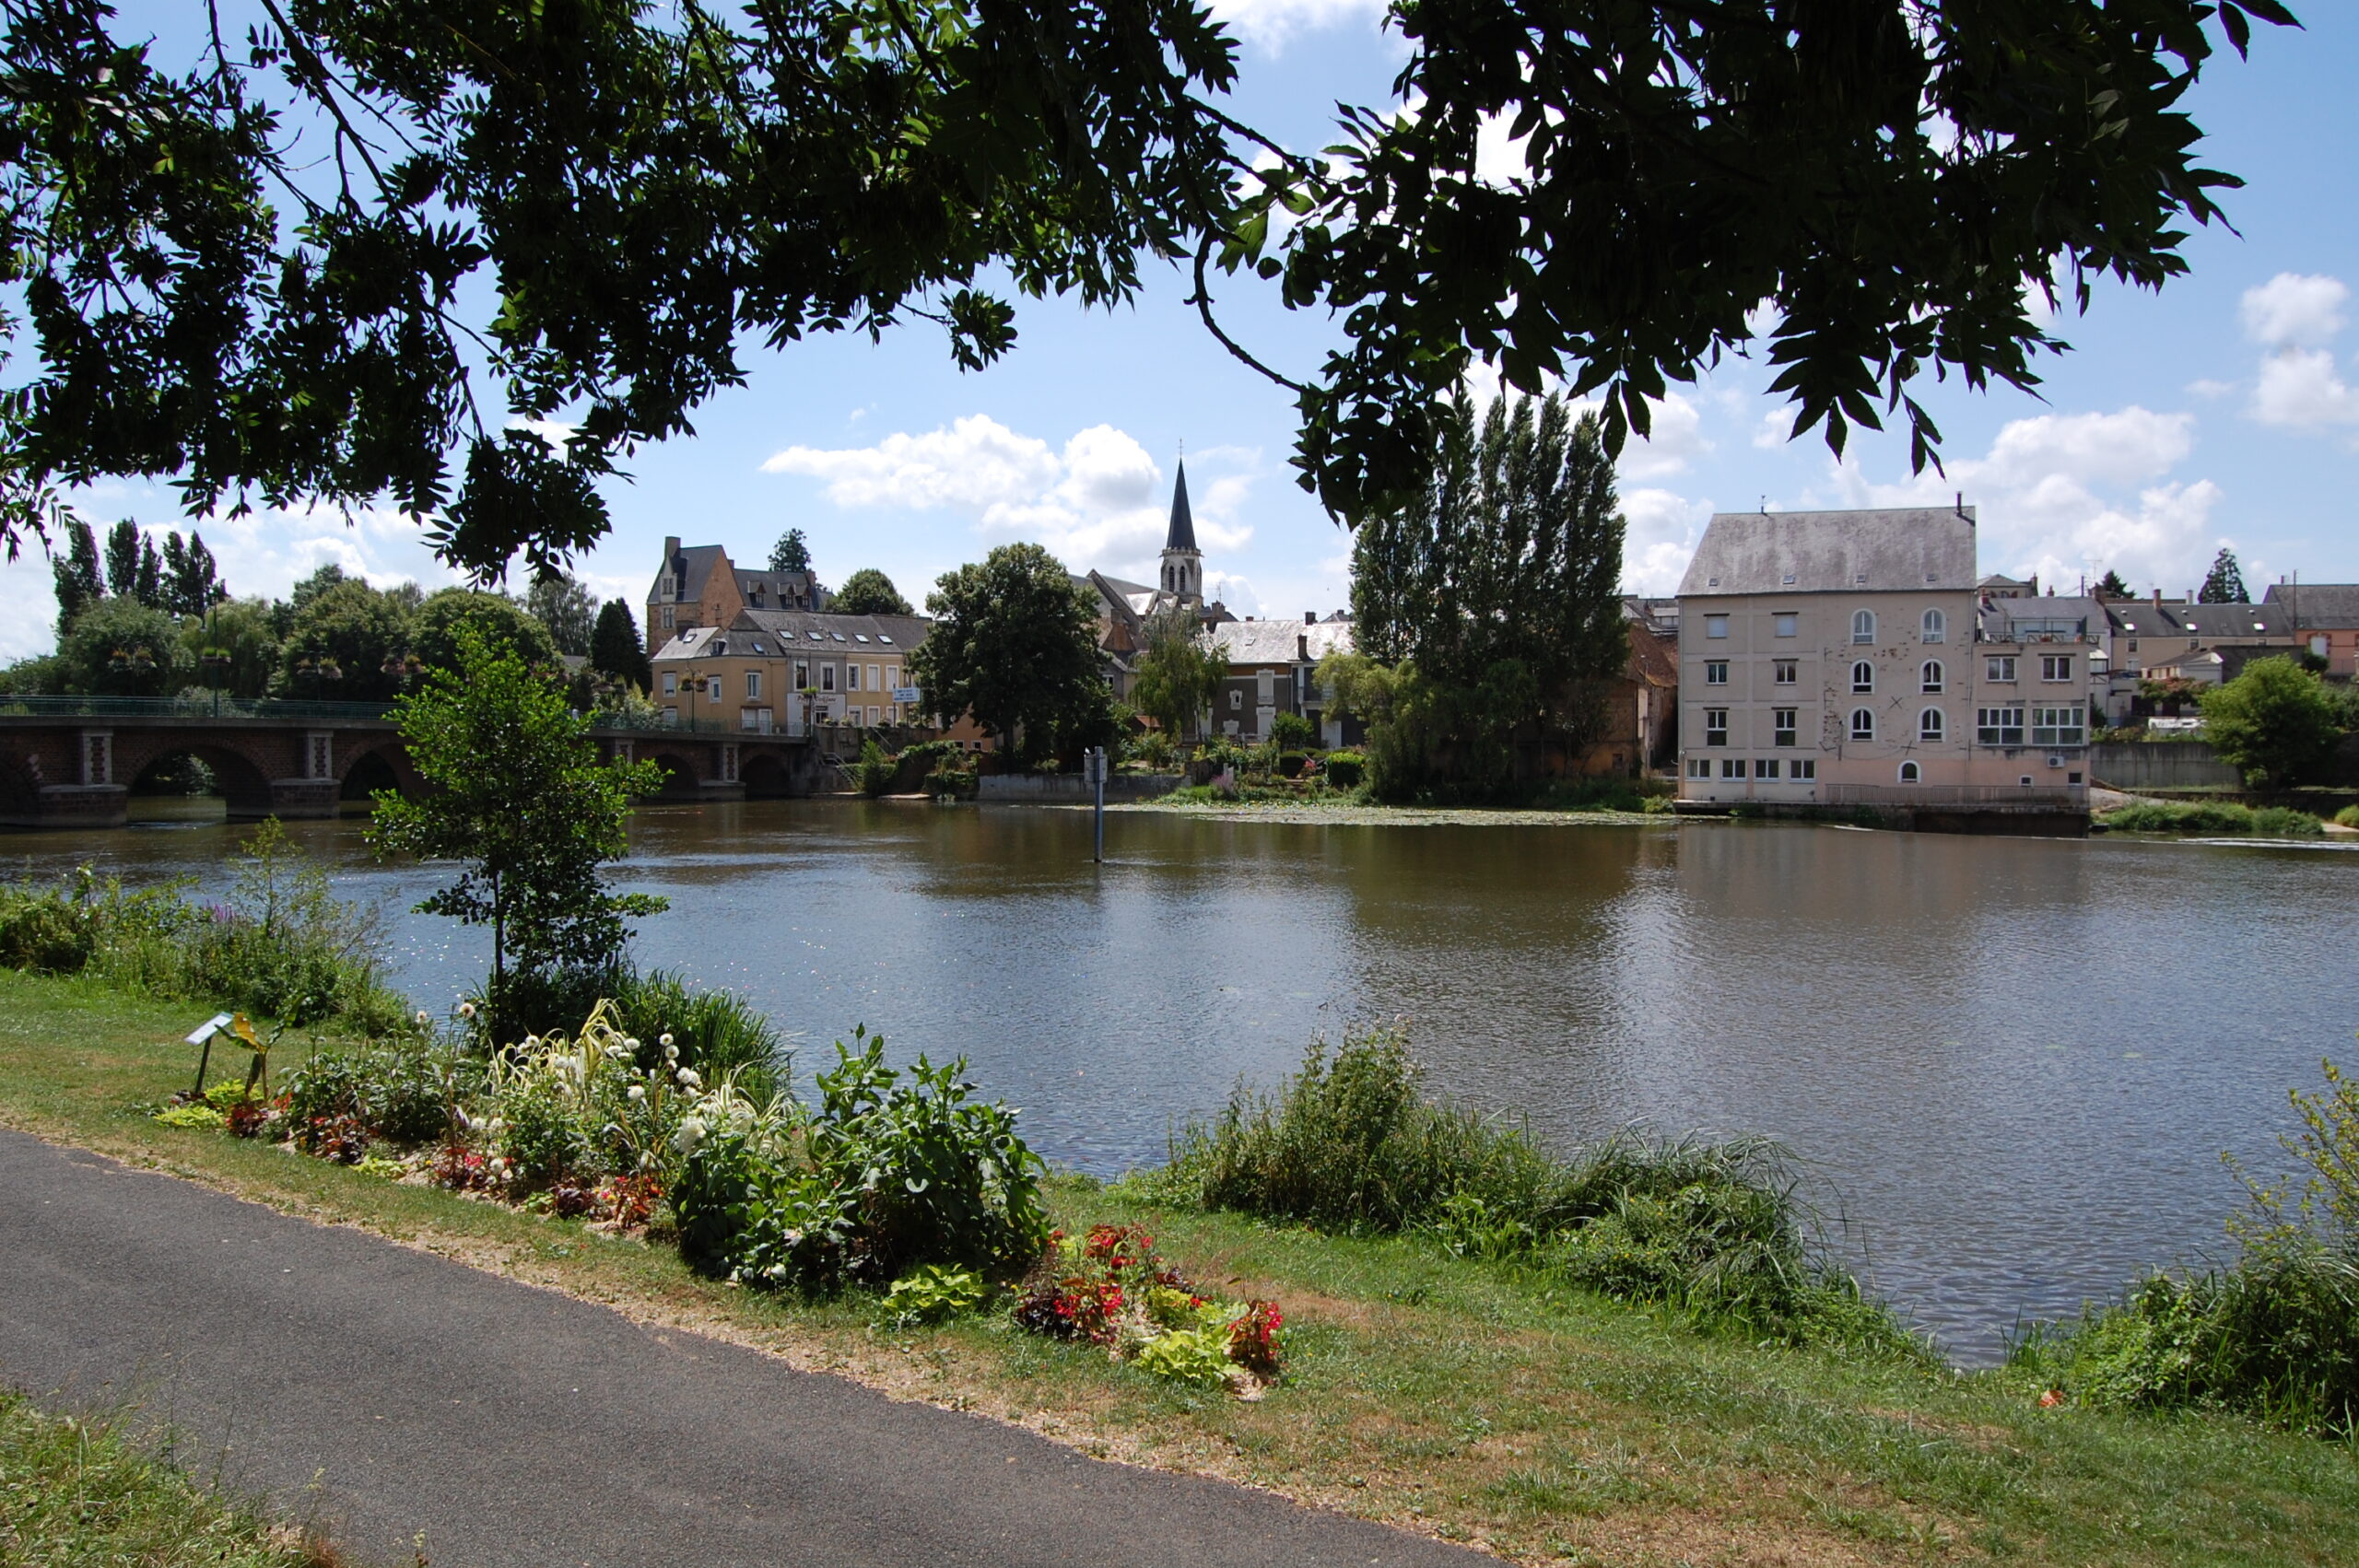 Par Mairie de La Suze sur Sarthe — Travail personnel, CC BY-SA 4.0, https://commons.wikimedia.org/w/index.php?curid=52367562